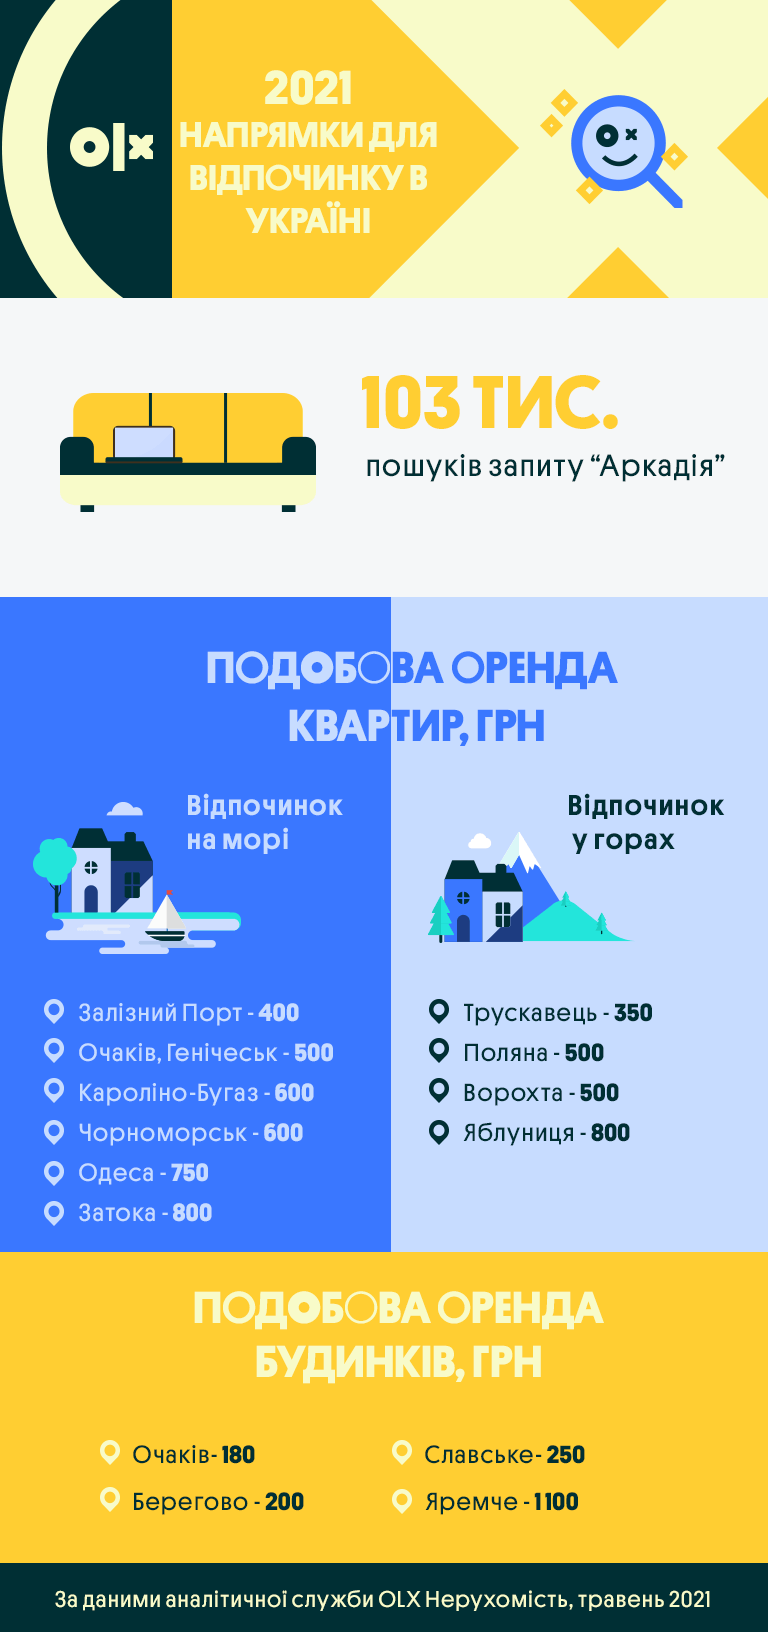 Закарпаття, Одеська та Запорізька області: найпопулярніші напрямки для відпочинку у 2021 році серед українців